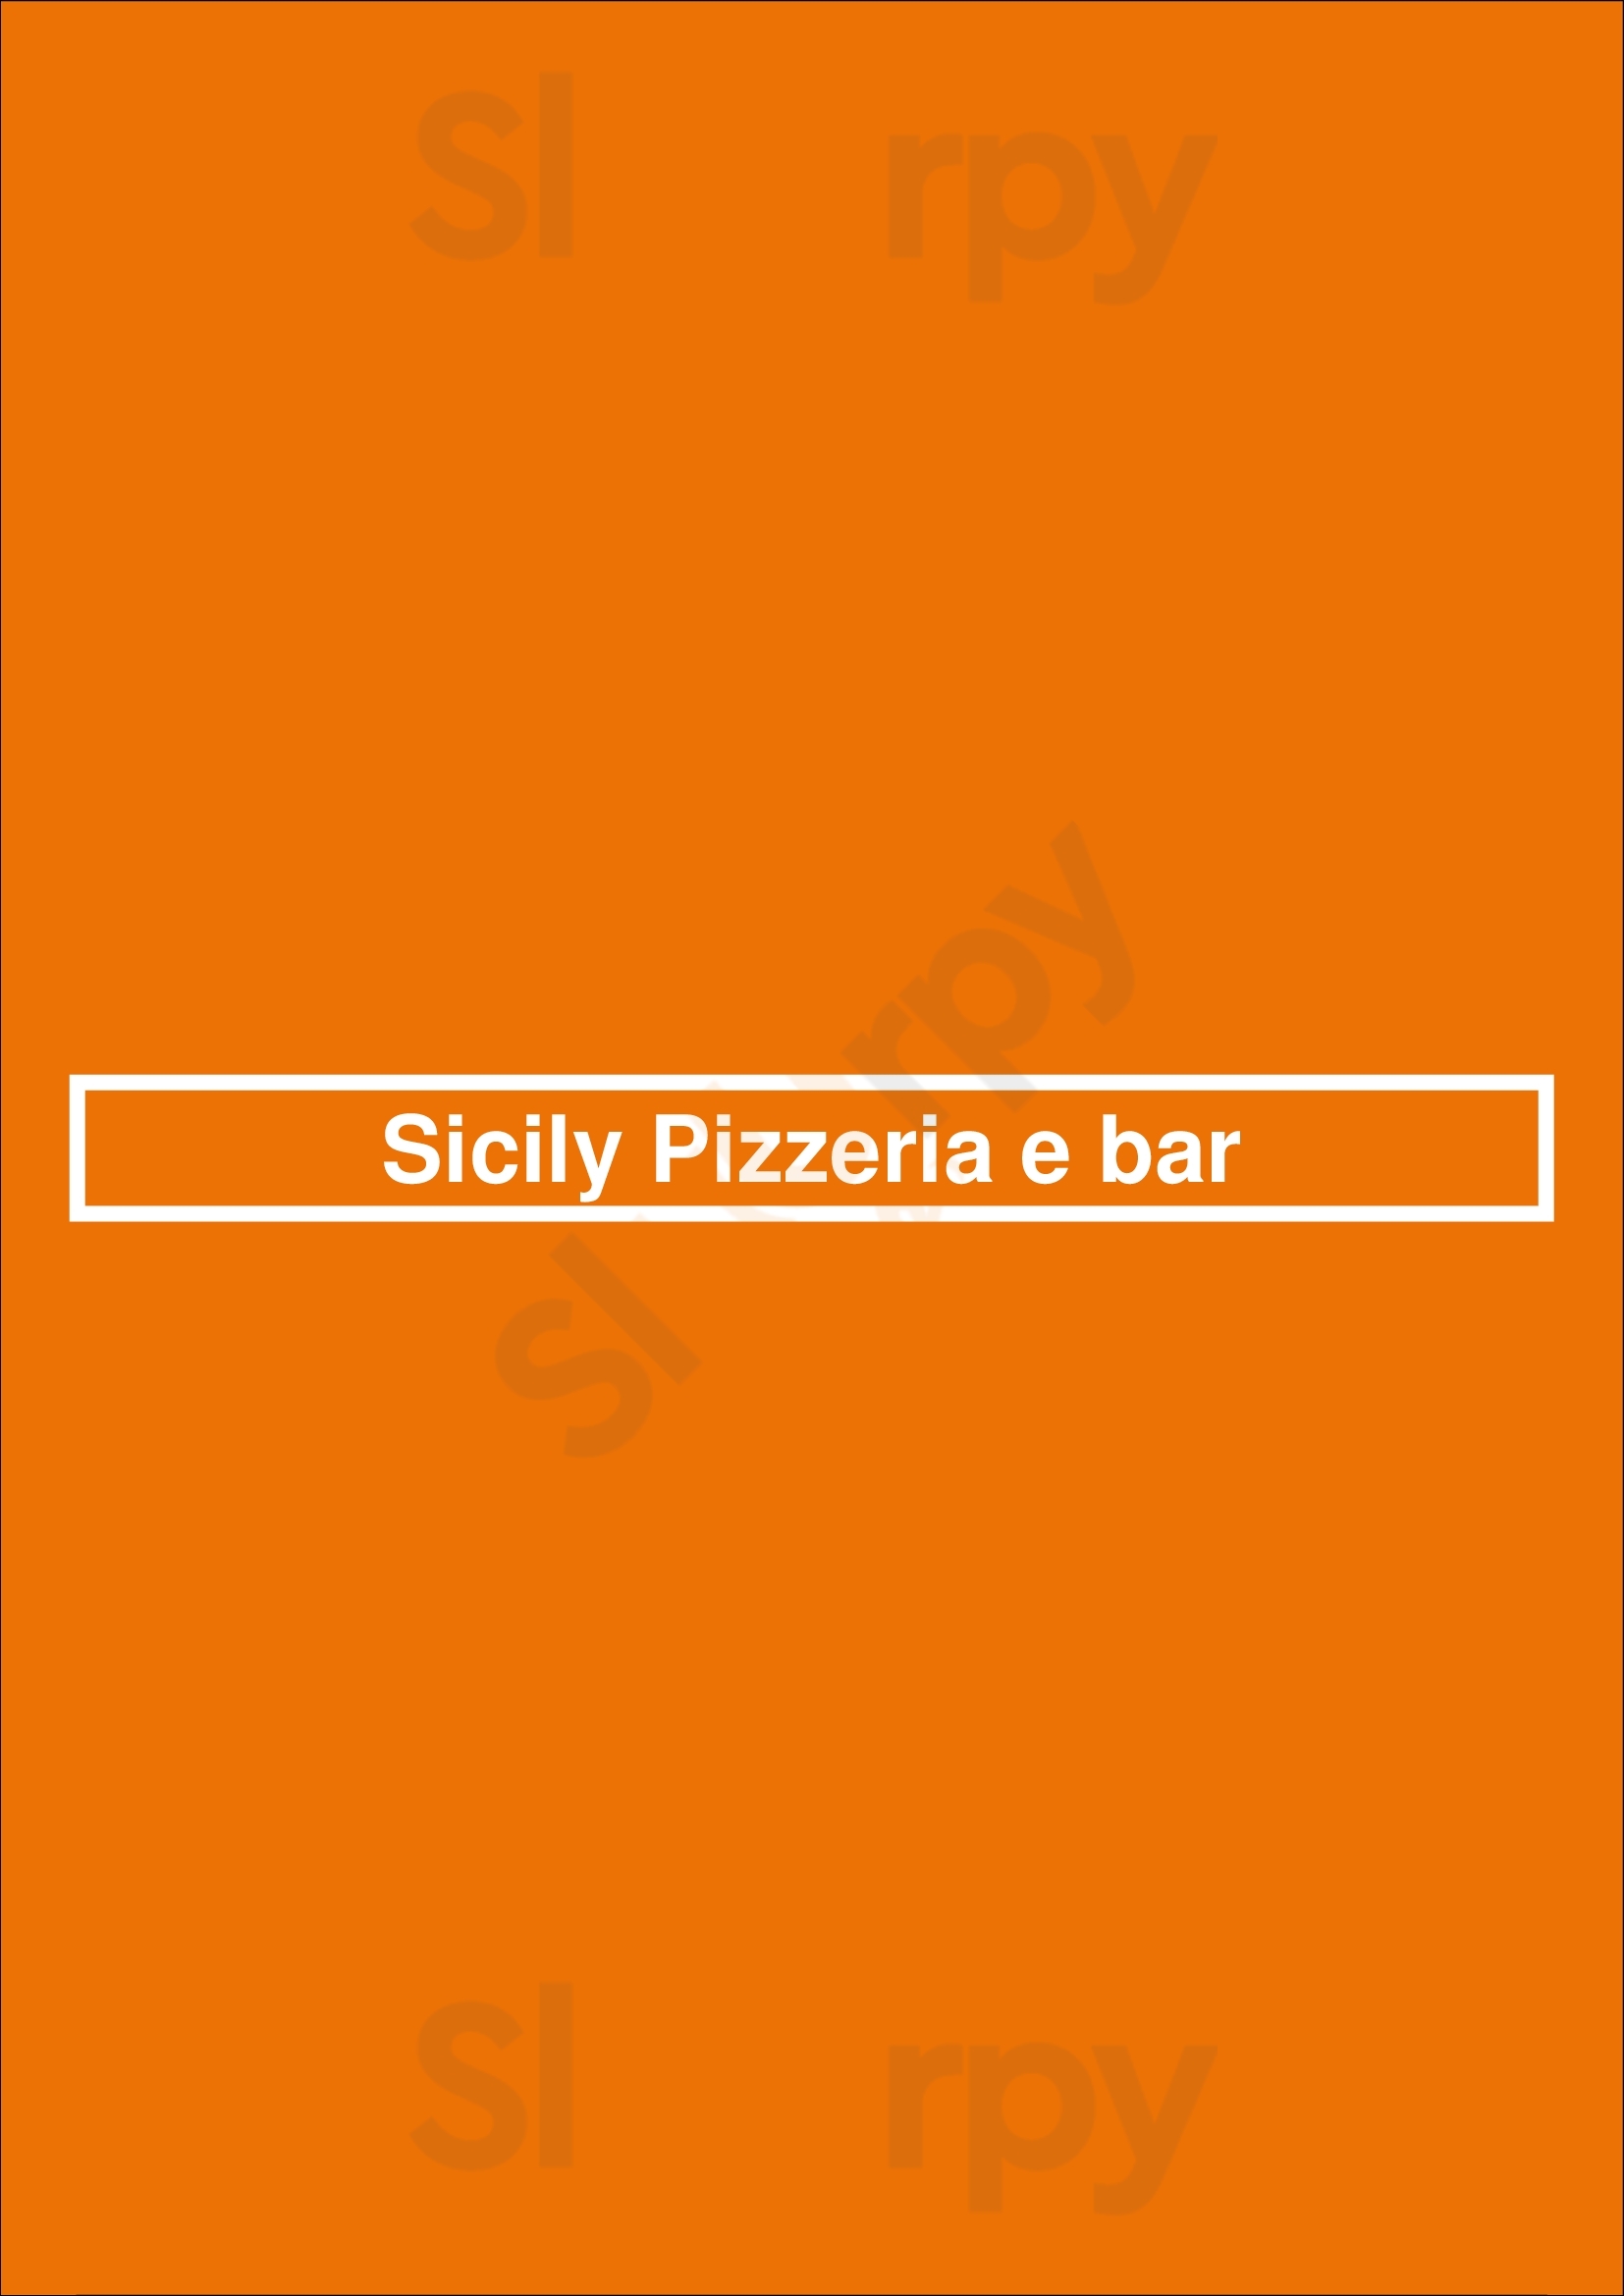 Sicily Pizzeria E Bar Adelaide Menu - 1